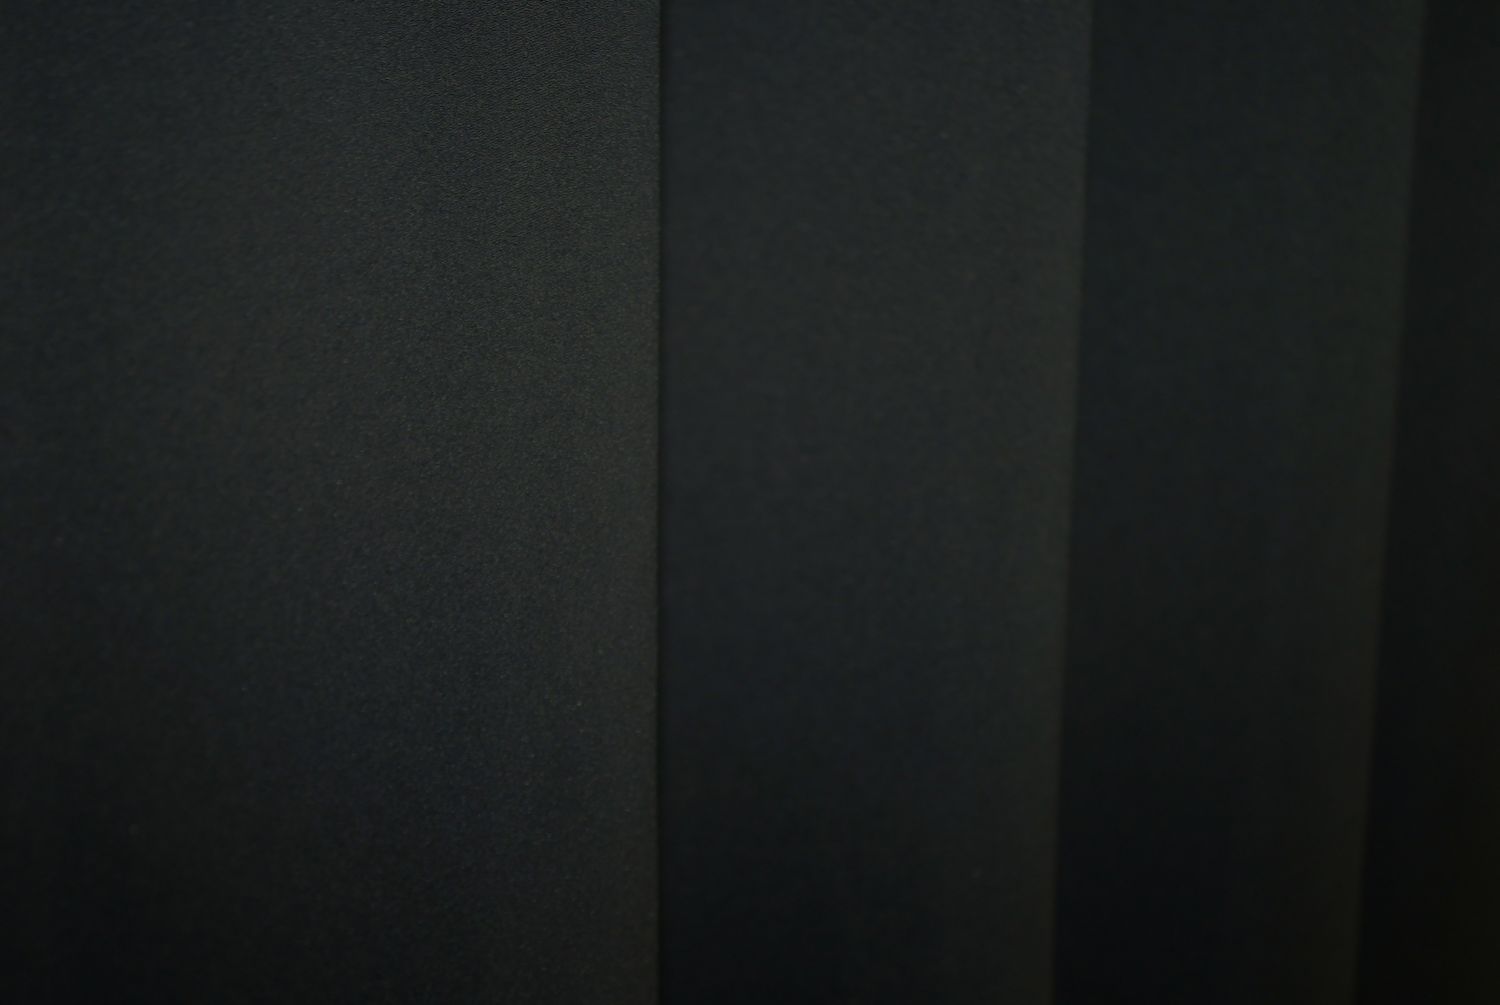 Комплект штор из ткани блэкаут, коллекция "Midnight" цвет черный 1165ш, Черный, Комплект коротких штор (2шт. 1,4х1,7м.), Классические, Короткие, 1,4 м., 1,7 м., 140, 170, 1,5 - 2,5 м., В комплекте 2 шт., Тесьма